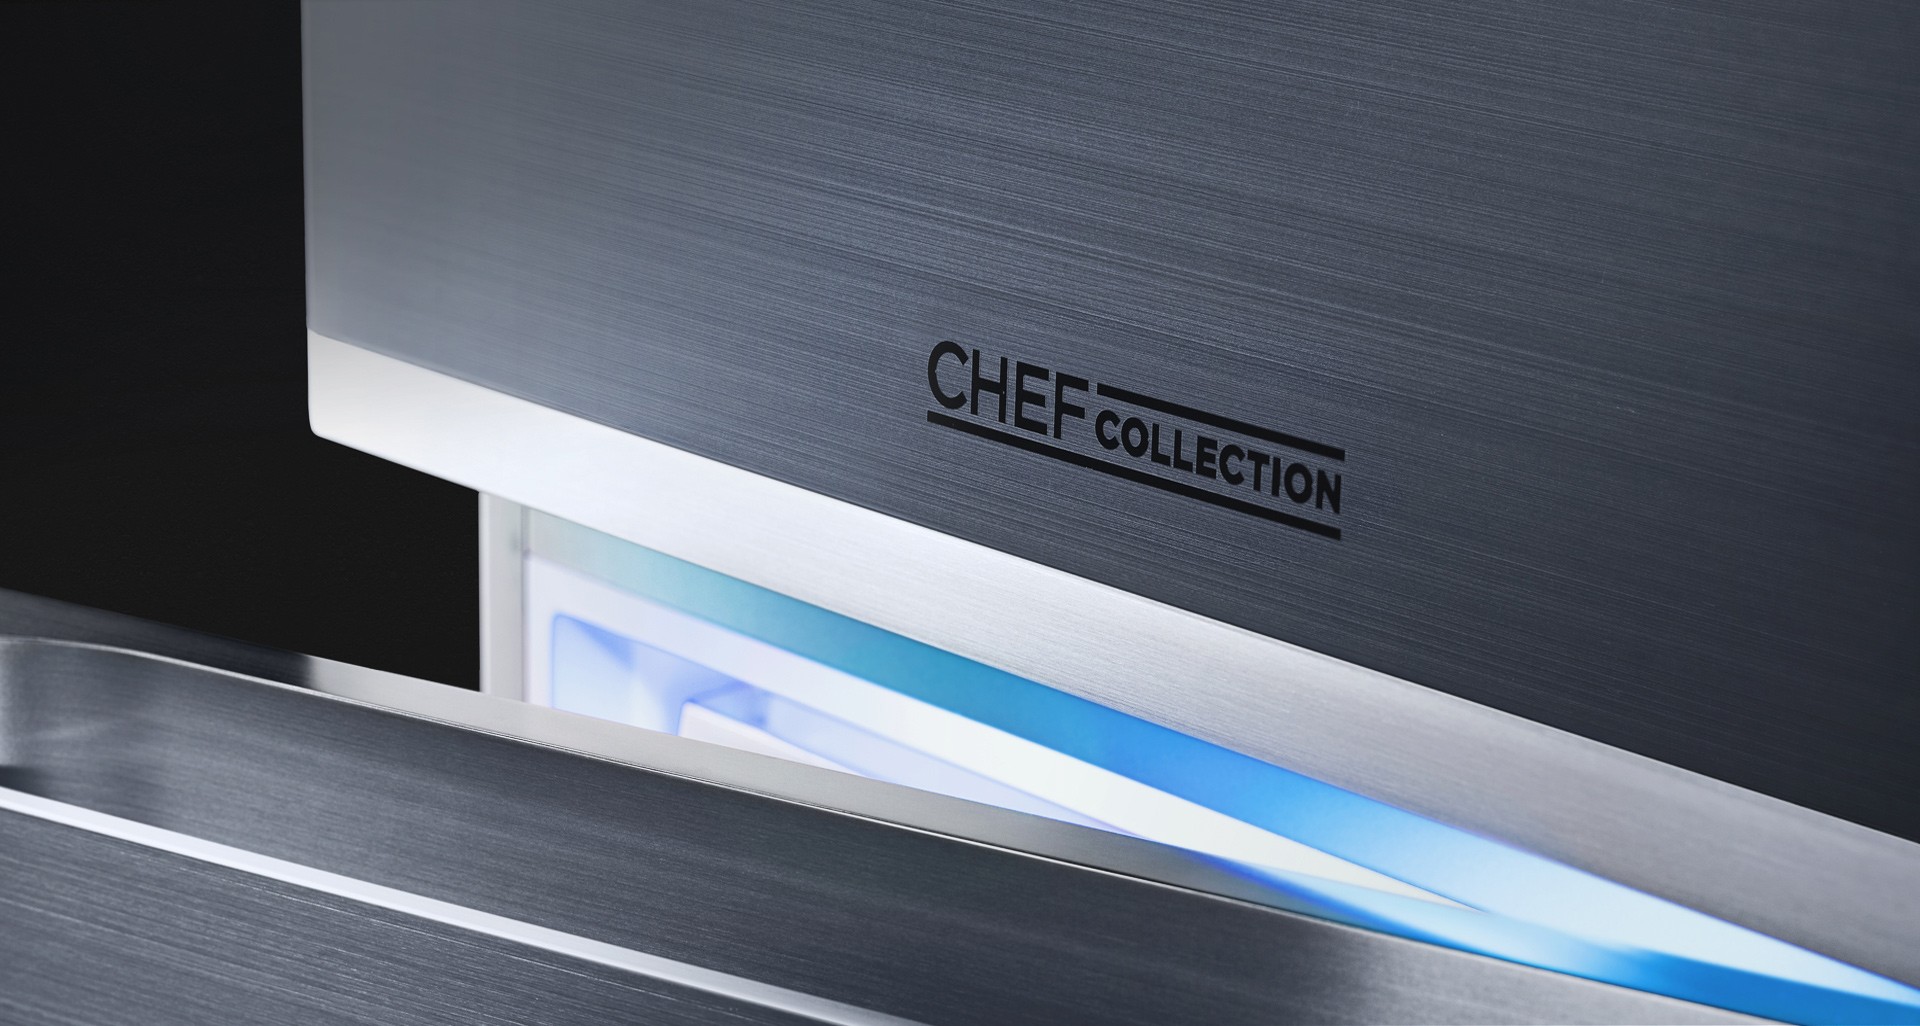 Samsung Chef Collection, frigoríficos de alta cocina